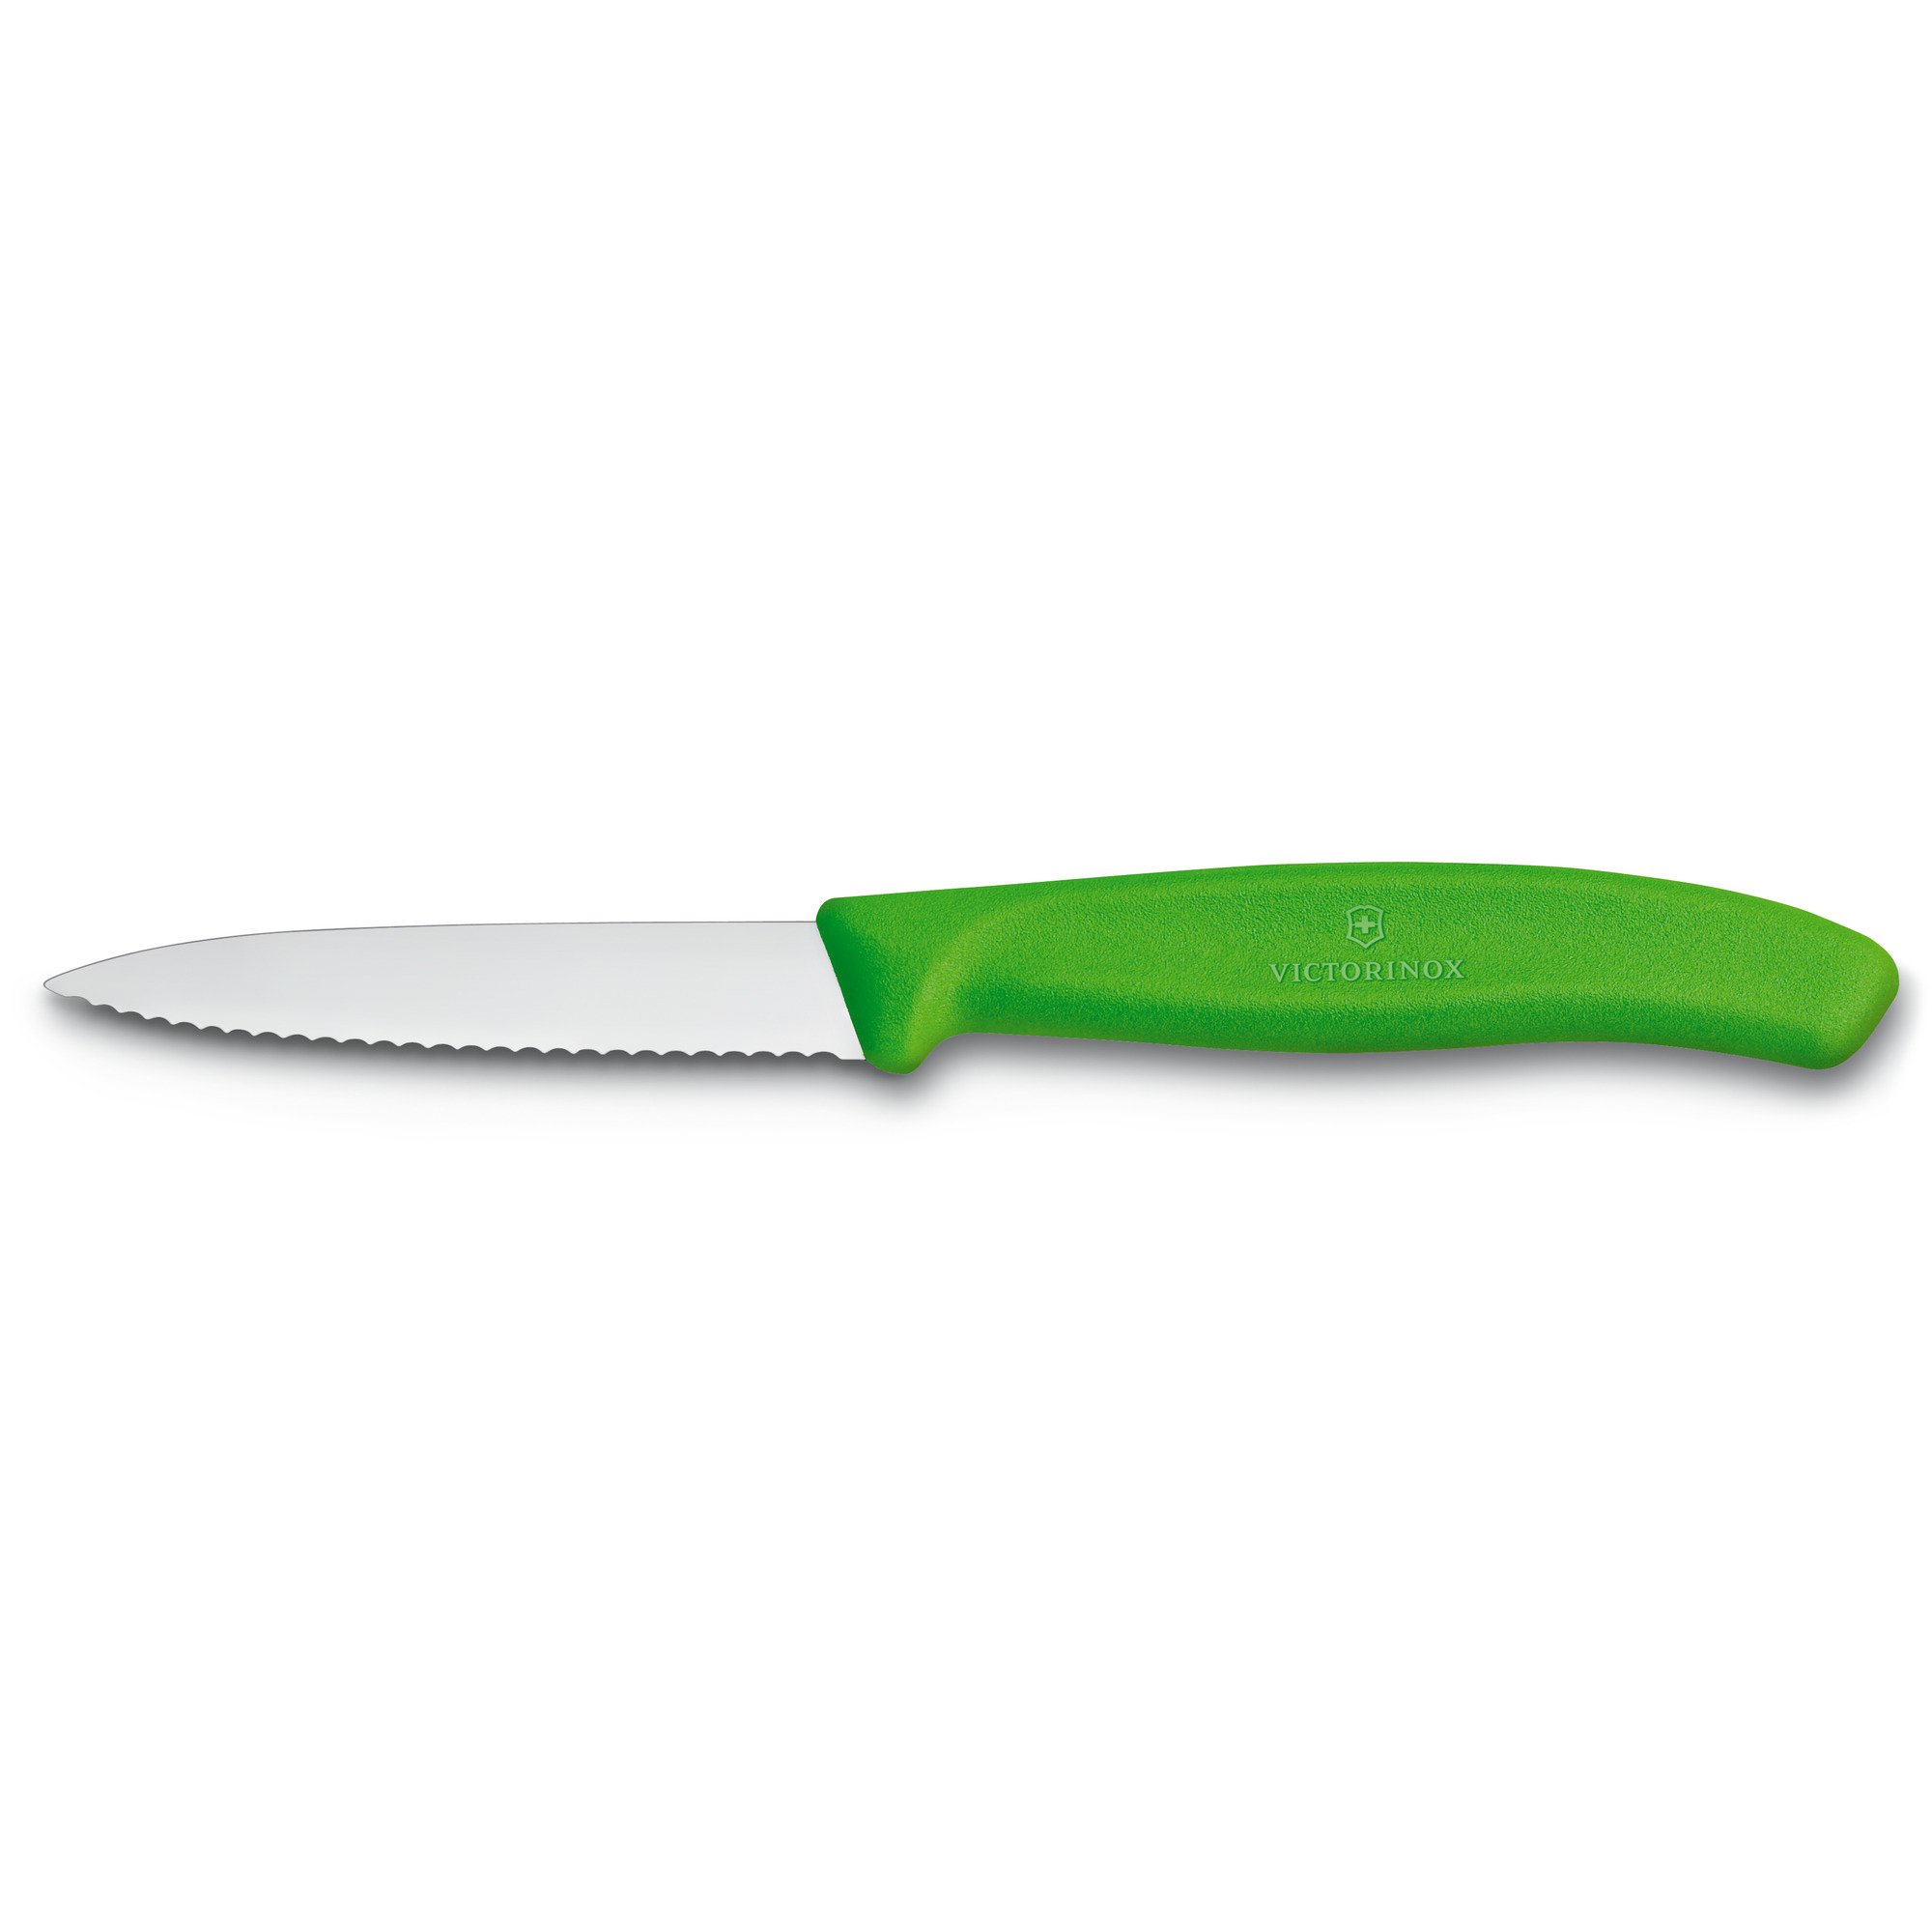 VICTORINOX couteau à légumes 8cm jaune